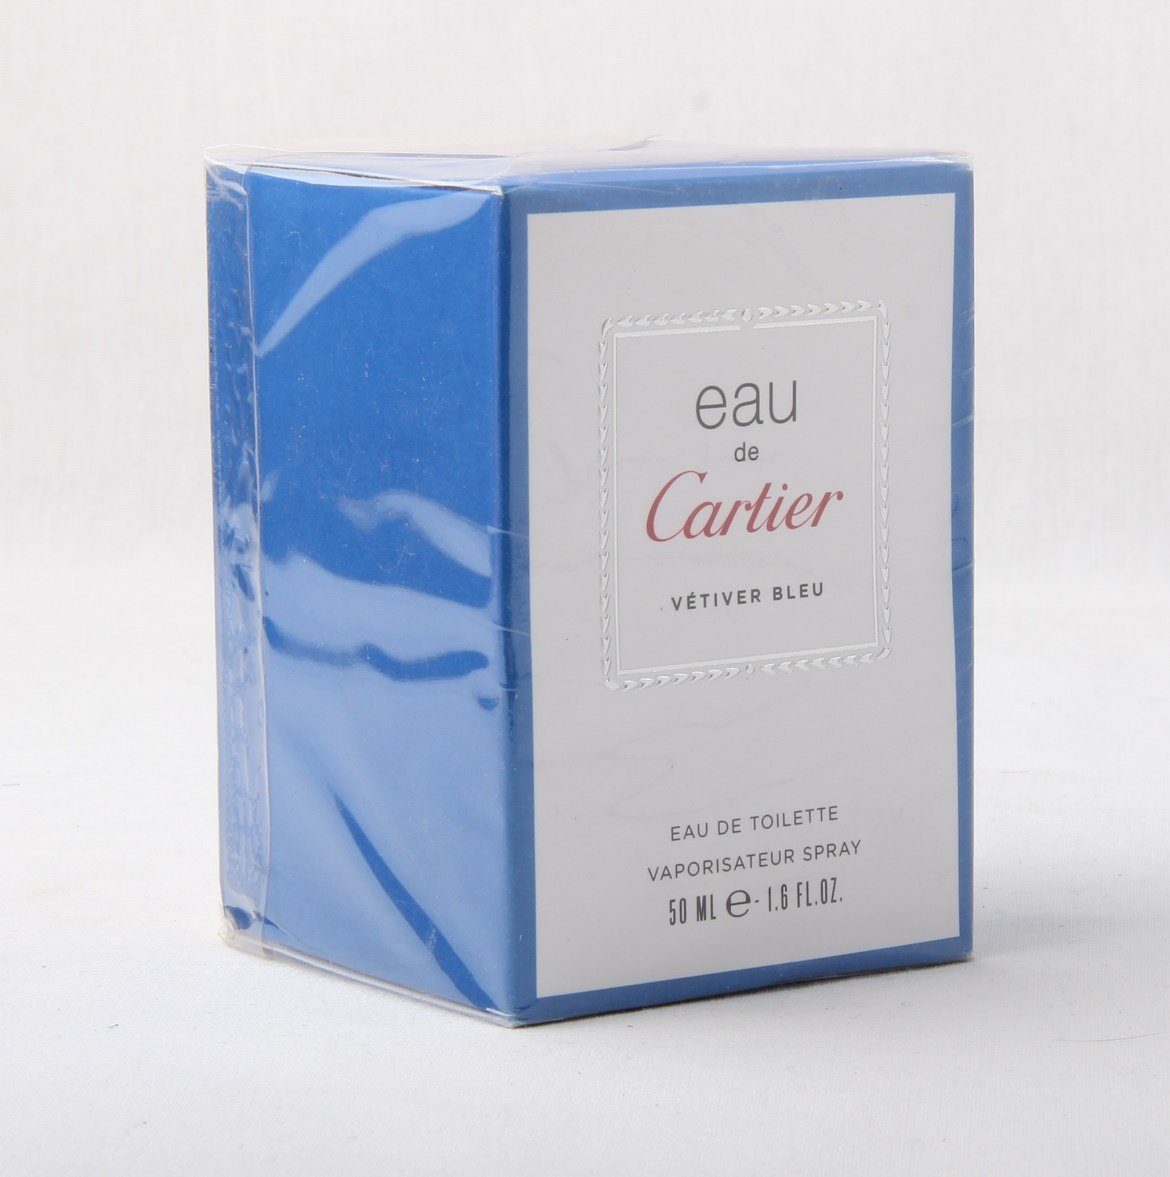 Cartier Eau de Toilette Eau de Cartier Vetiver Bleu Eau de Toilette Spray  50ml